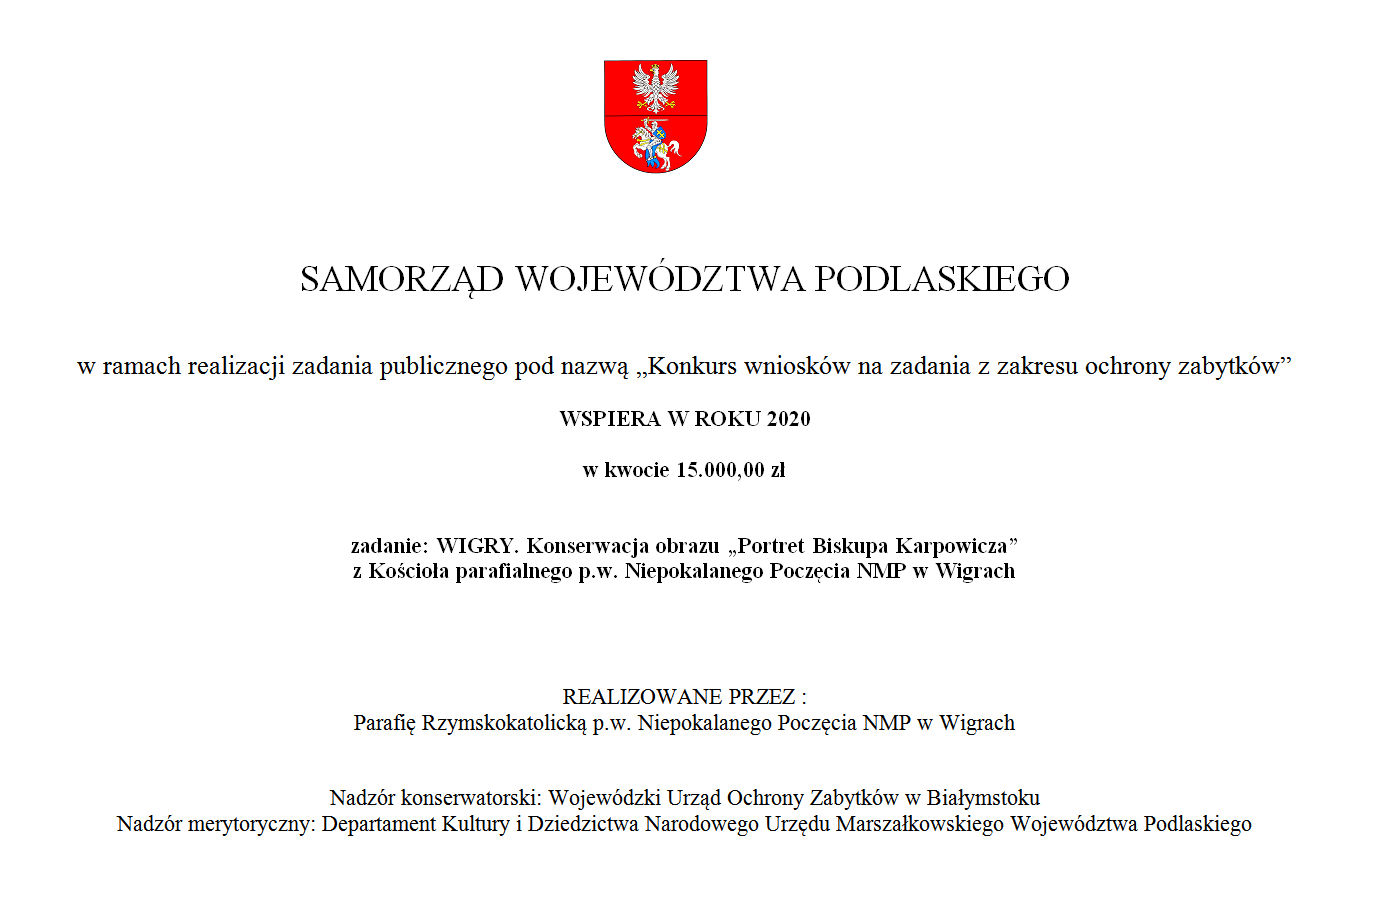 Konserwacja obrazu "portret Bpa Karpowicza" - Samorząd Województwa Podlaskiego